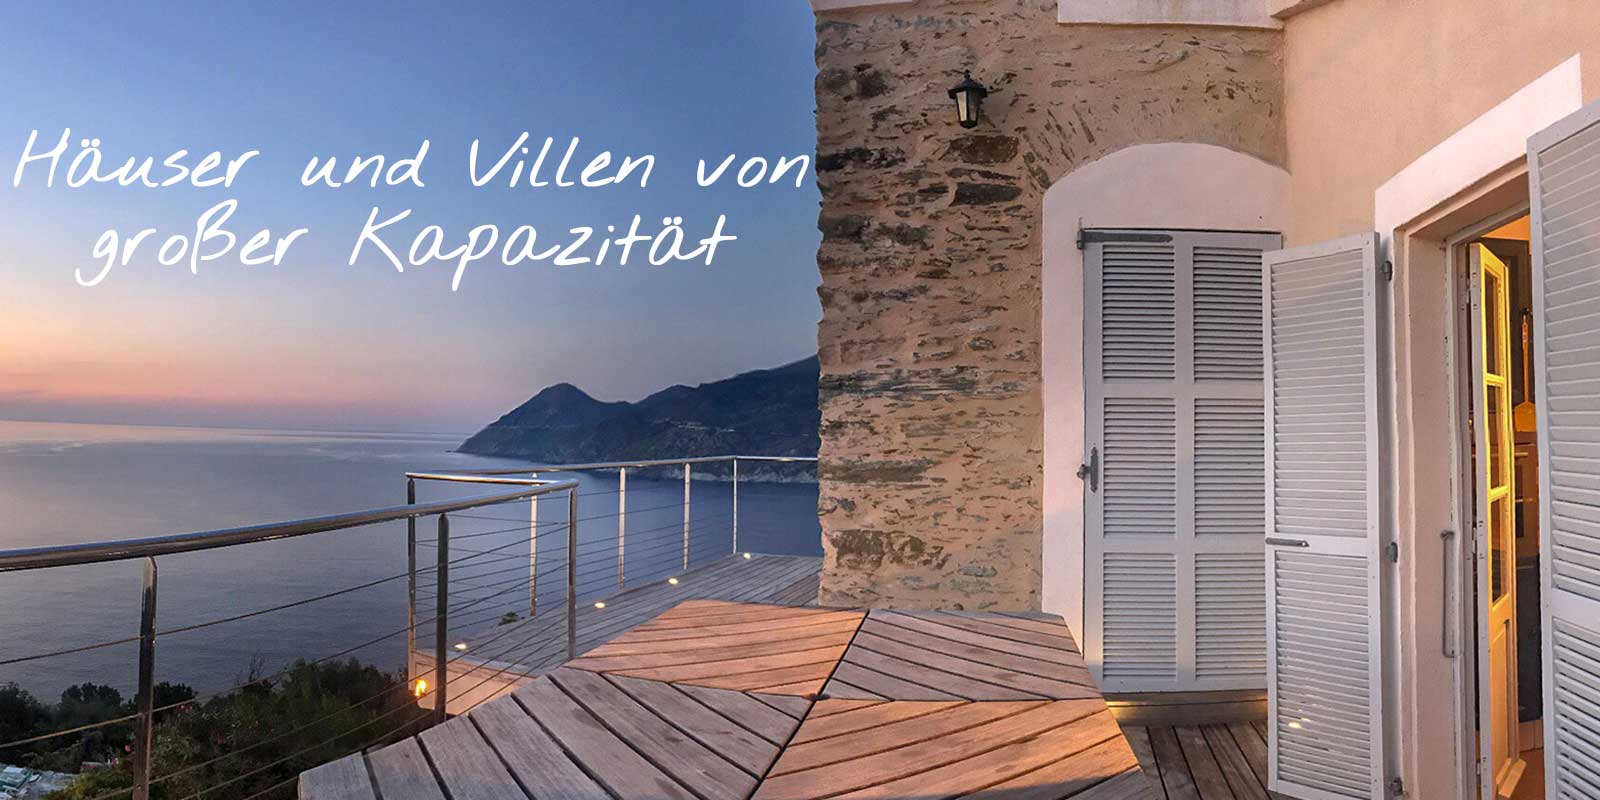 Ferienwohnung in Cap Corse, die Platz für mehr als 8 Reisende bietet